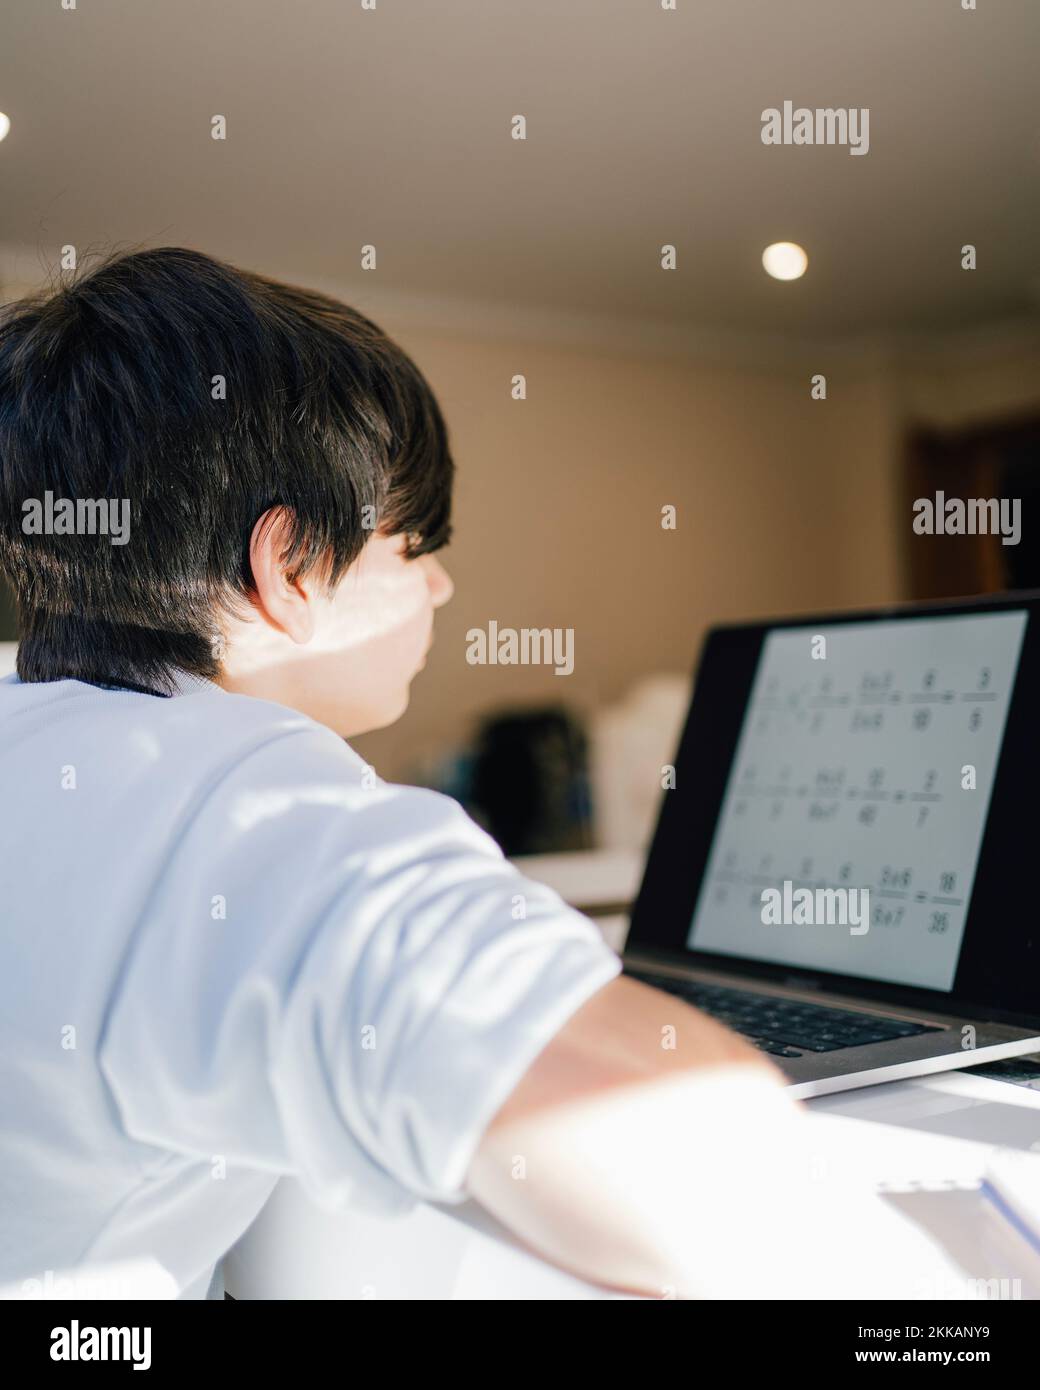 Formation à distance. Garçon apprend les mathématiques en regardant un ordinateur portable. Concept de l'éducation en ligne, de l'éducation à domicile, de la technologie Banque D'Images